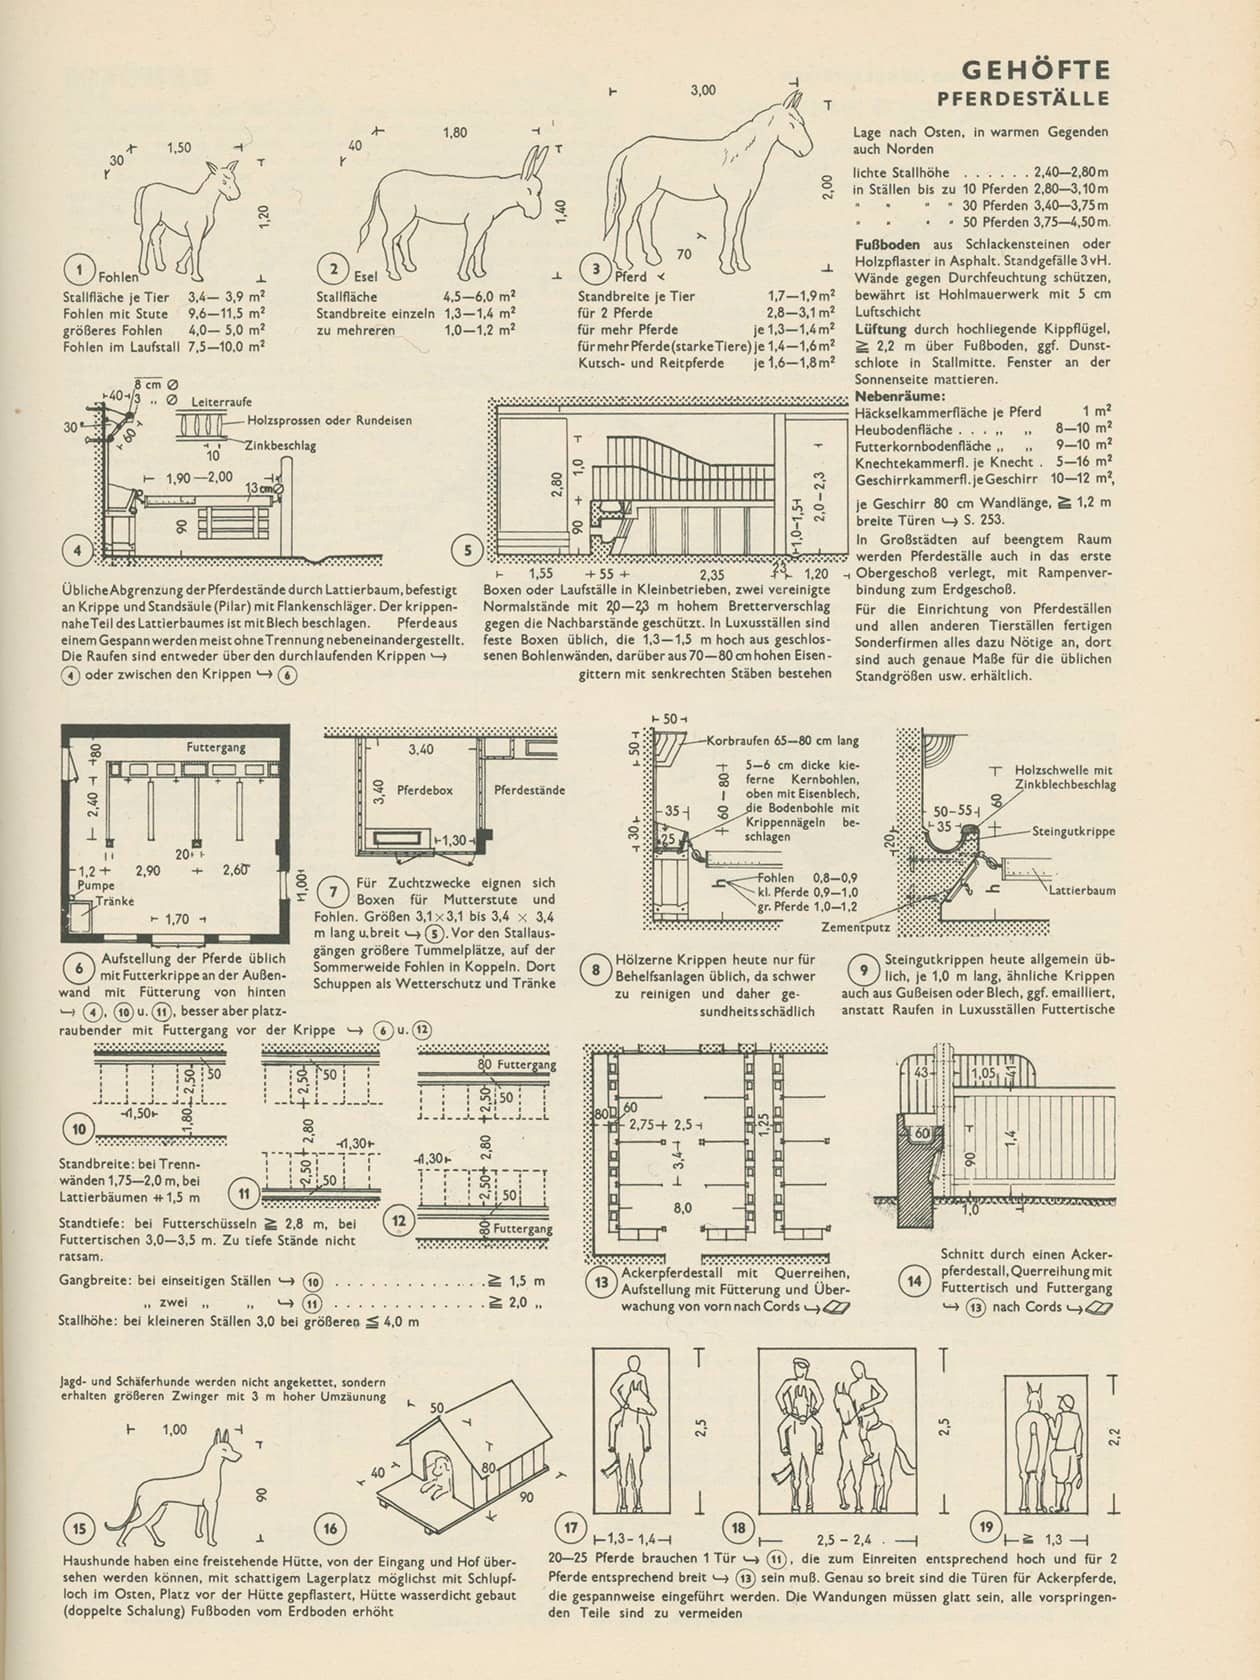 Erste Ausgabe der Bauentwurfslehre von Ernst Neufert, 1936,  “Gehöfte”